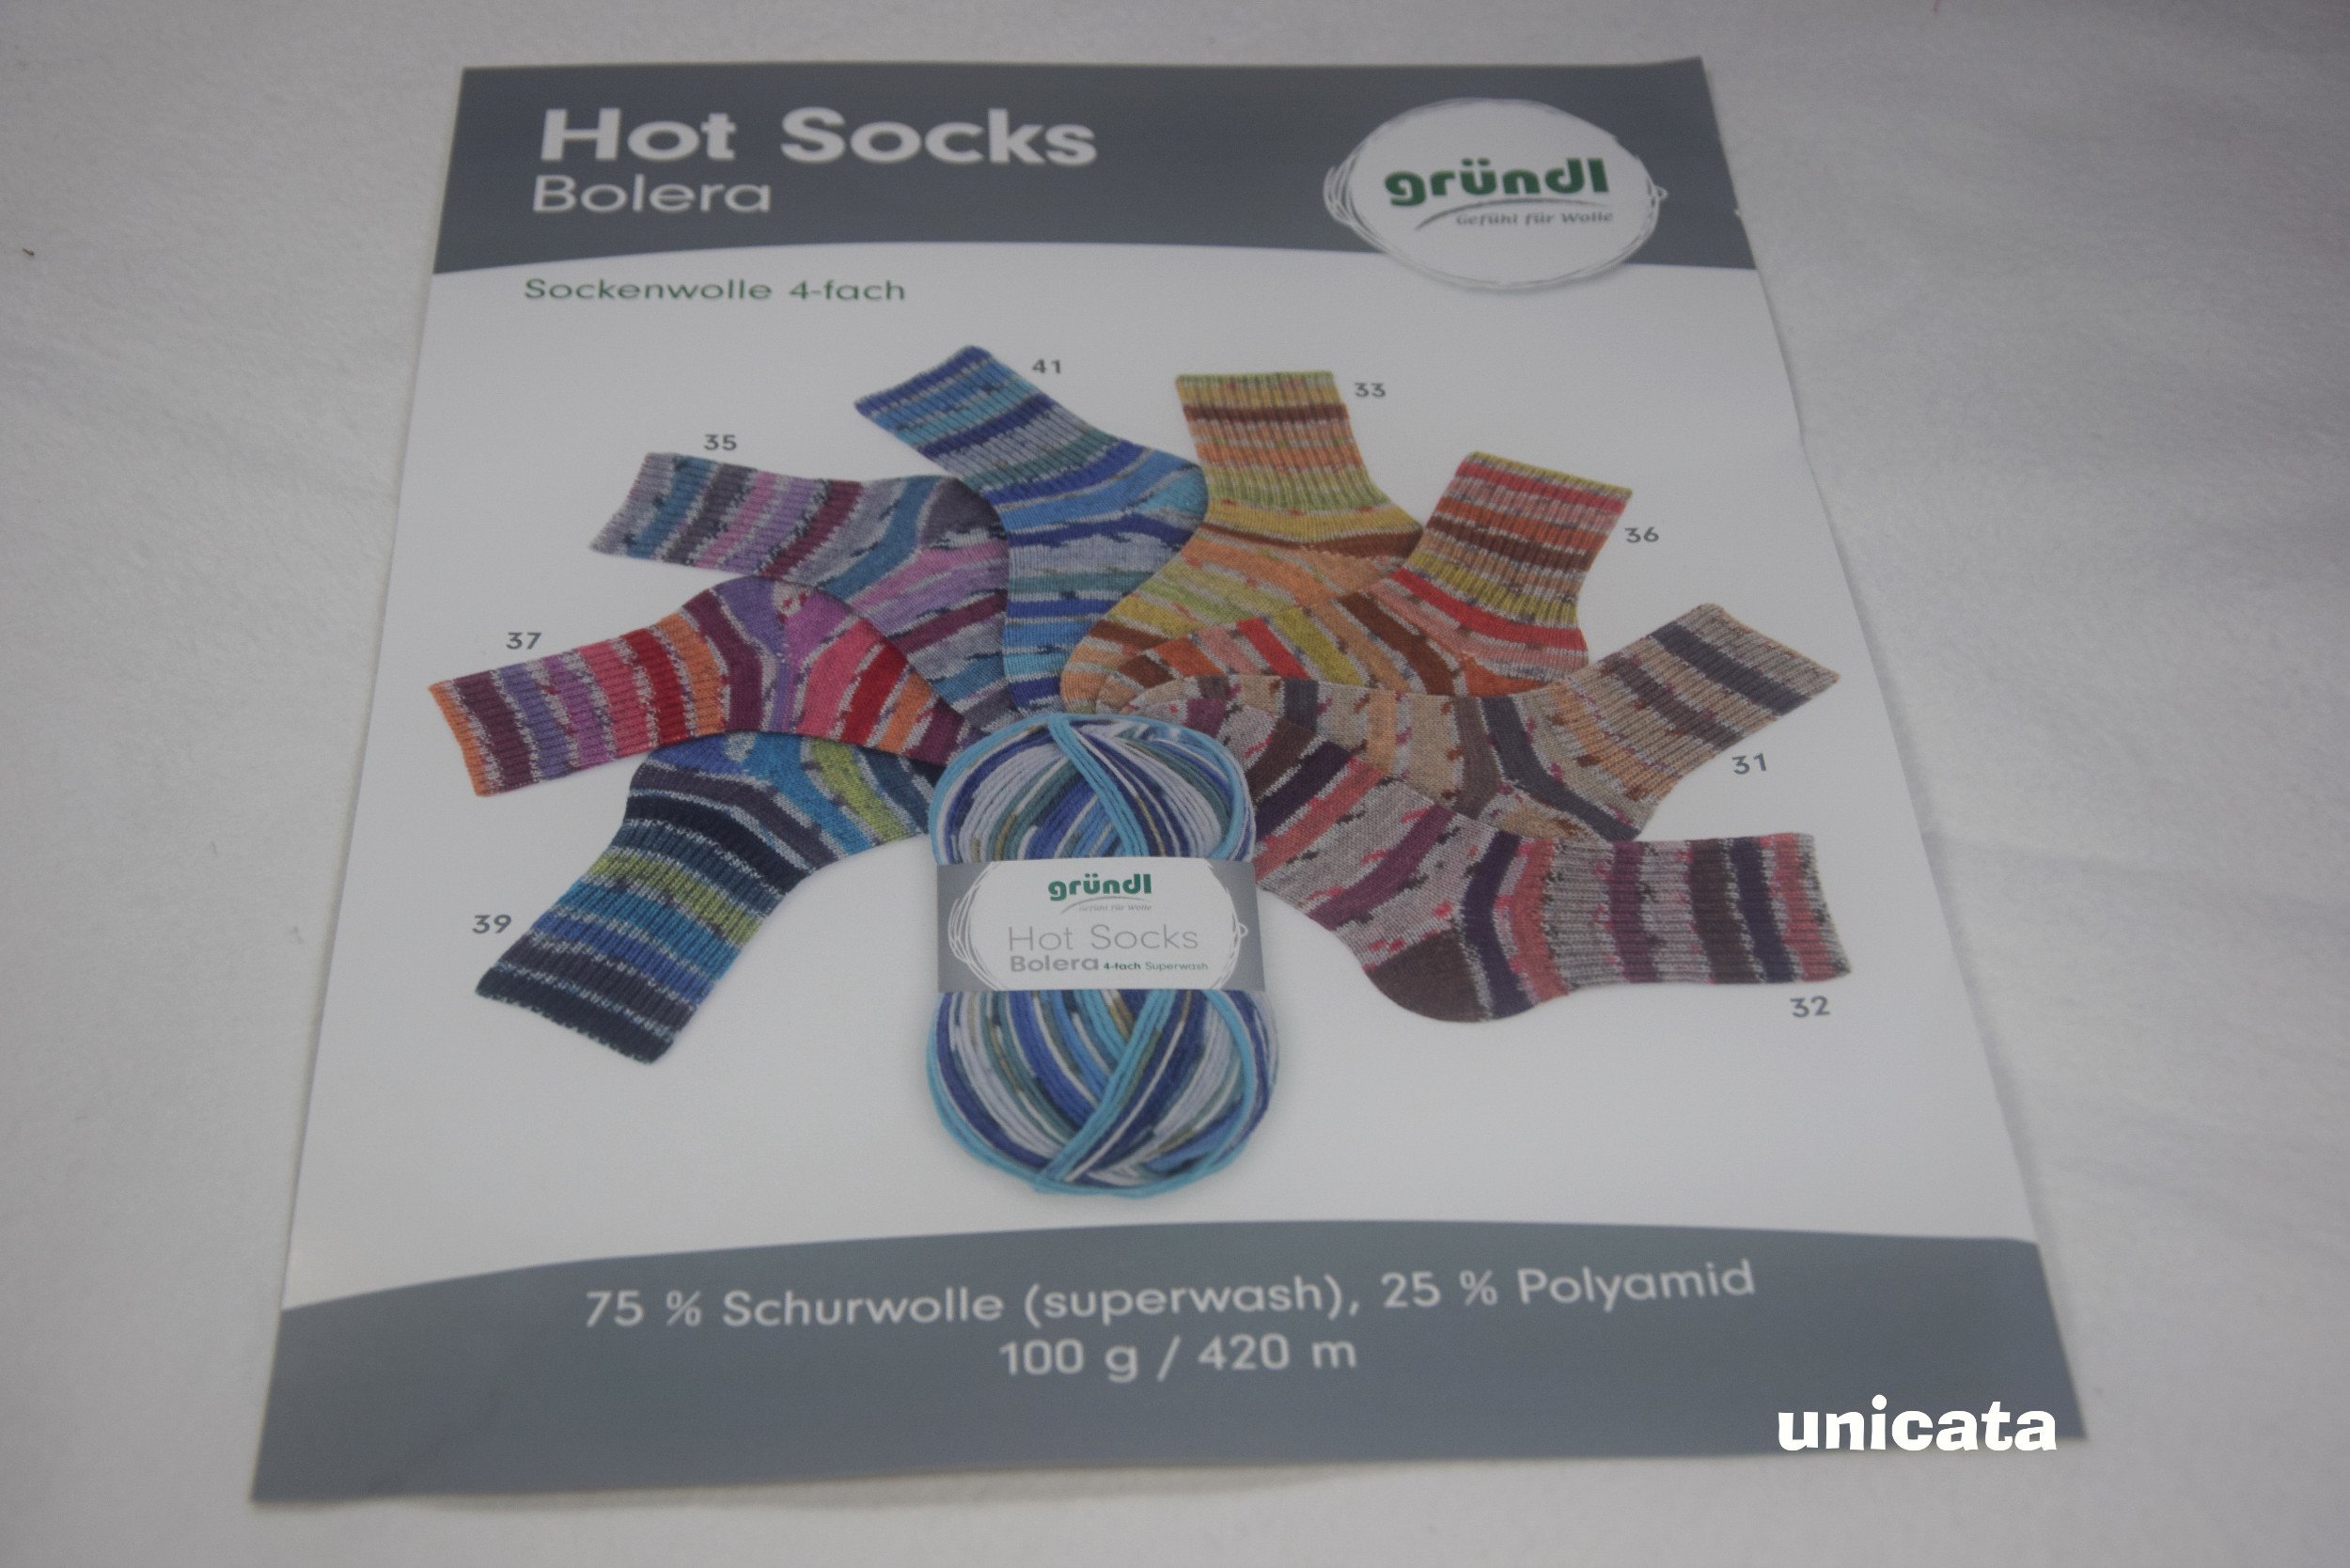 Plakat mit verschiedenen Farben der Sockenwolle